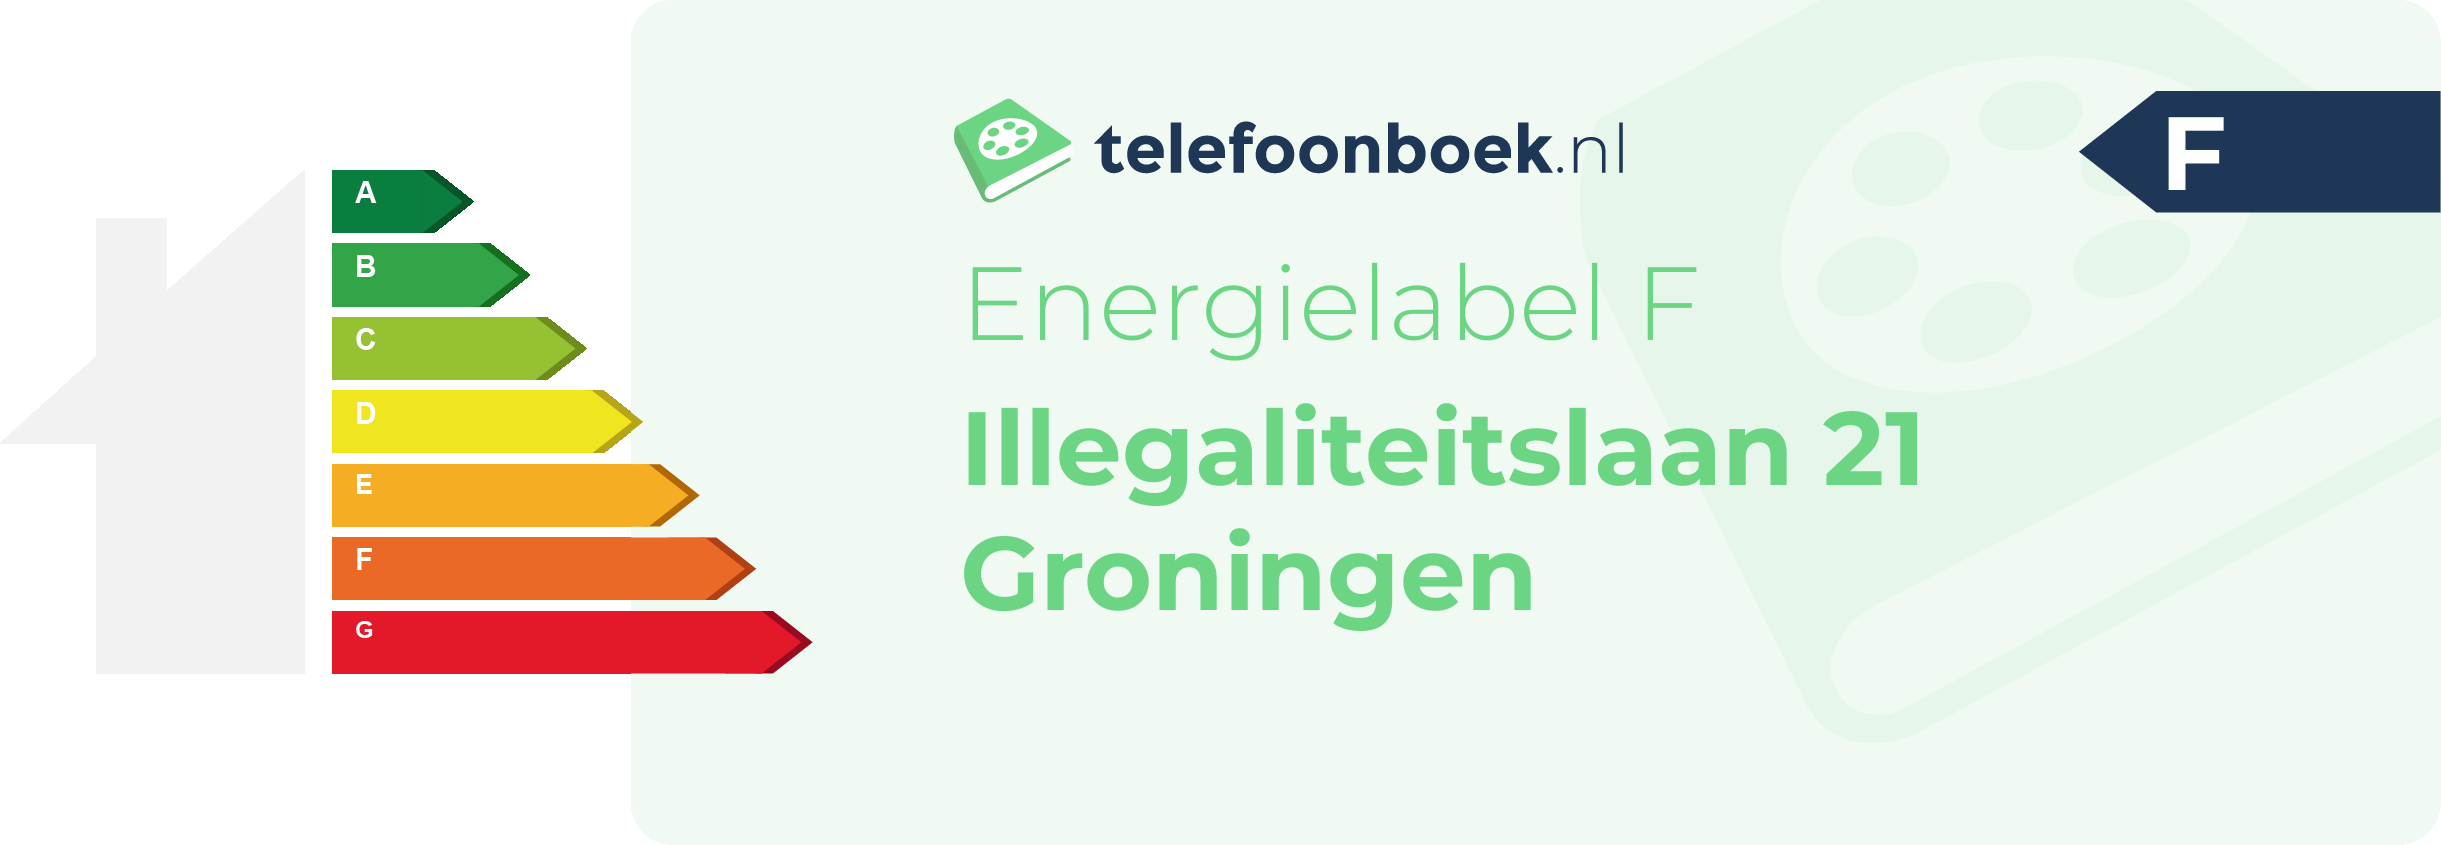 Energielabel Illegaliteitslaan 21 Groningen